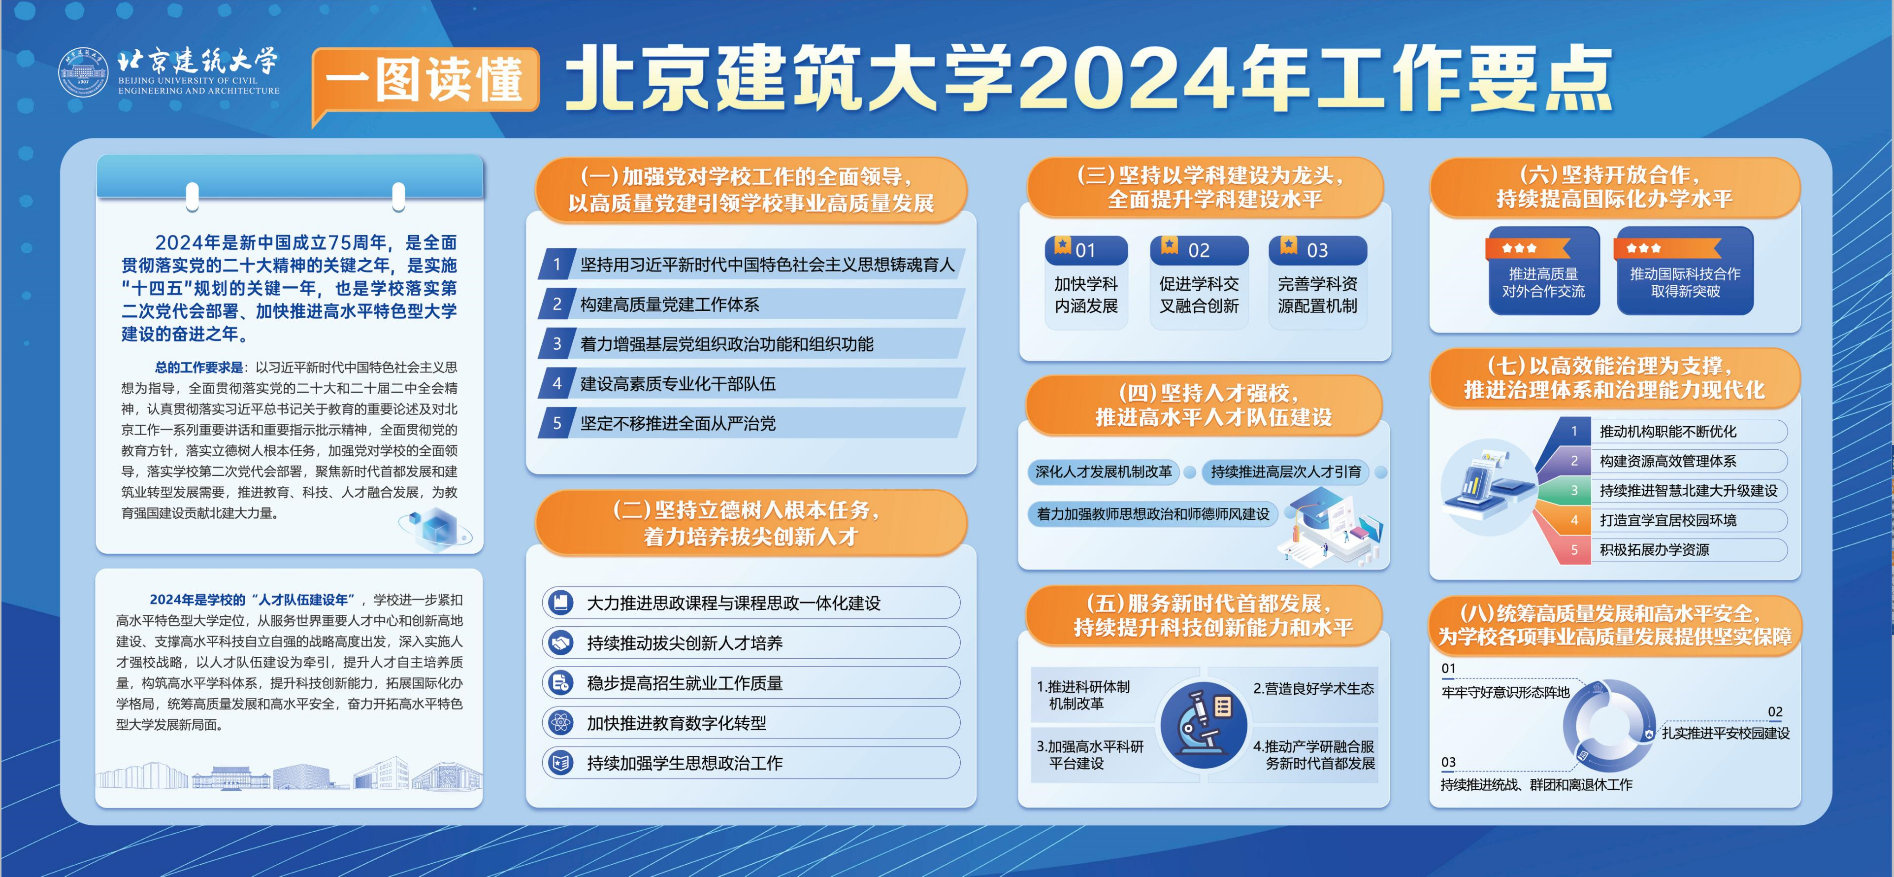 北京建筑大学2024年工作要点